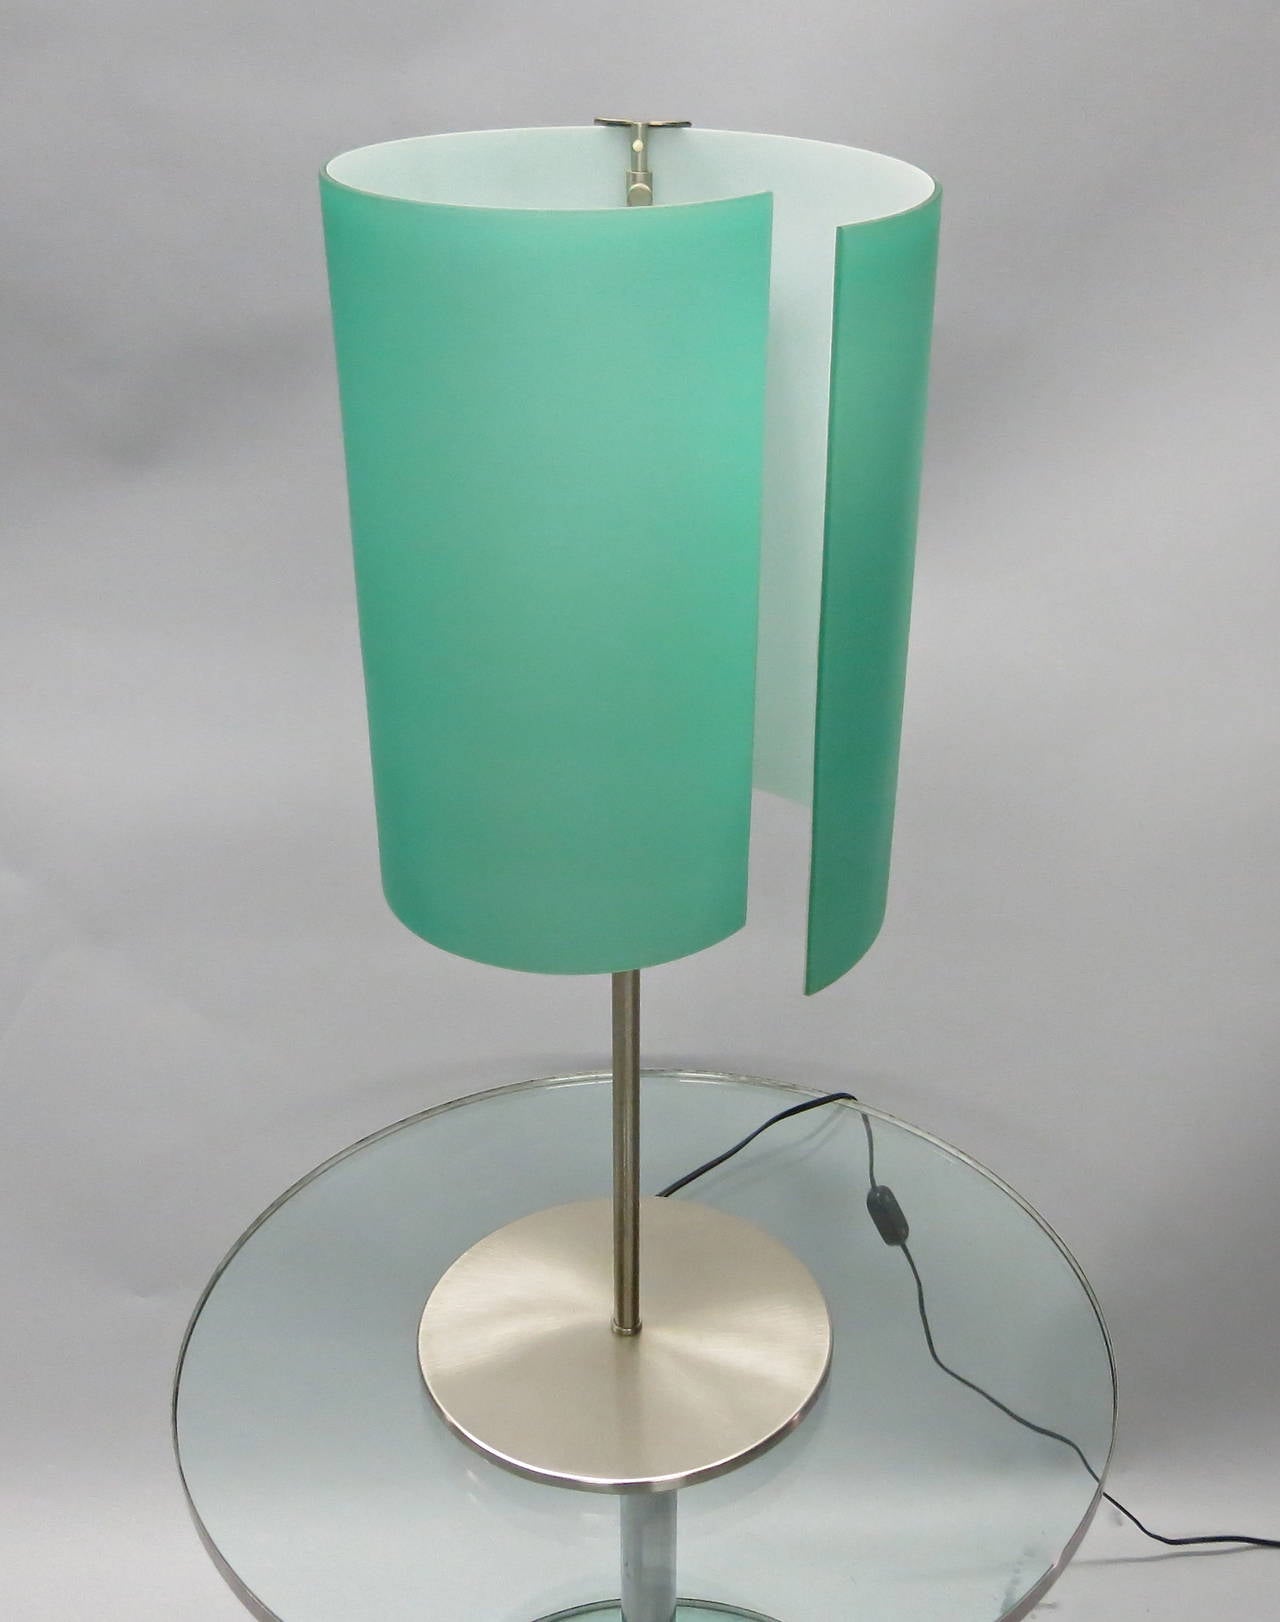 Lampe de table en verre bombé, fabriquée à la main, de couleur aqua satiné et nickel brossé ; étiquetée 